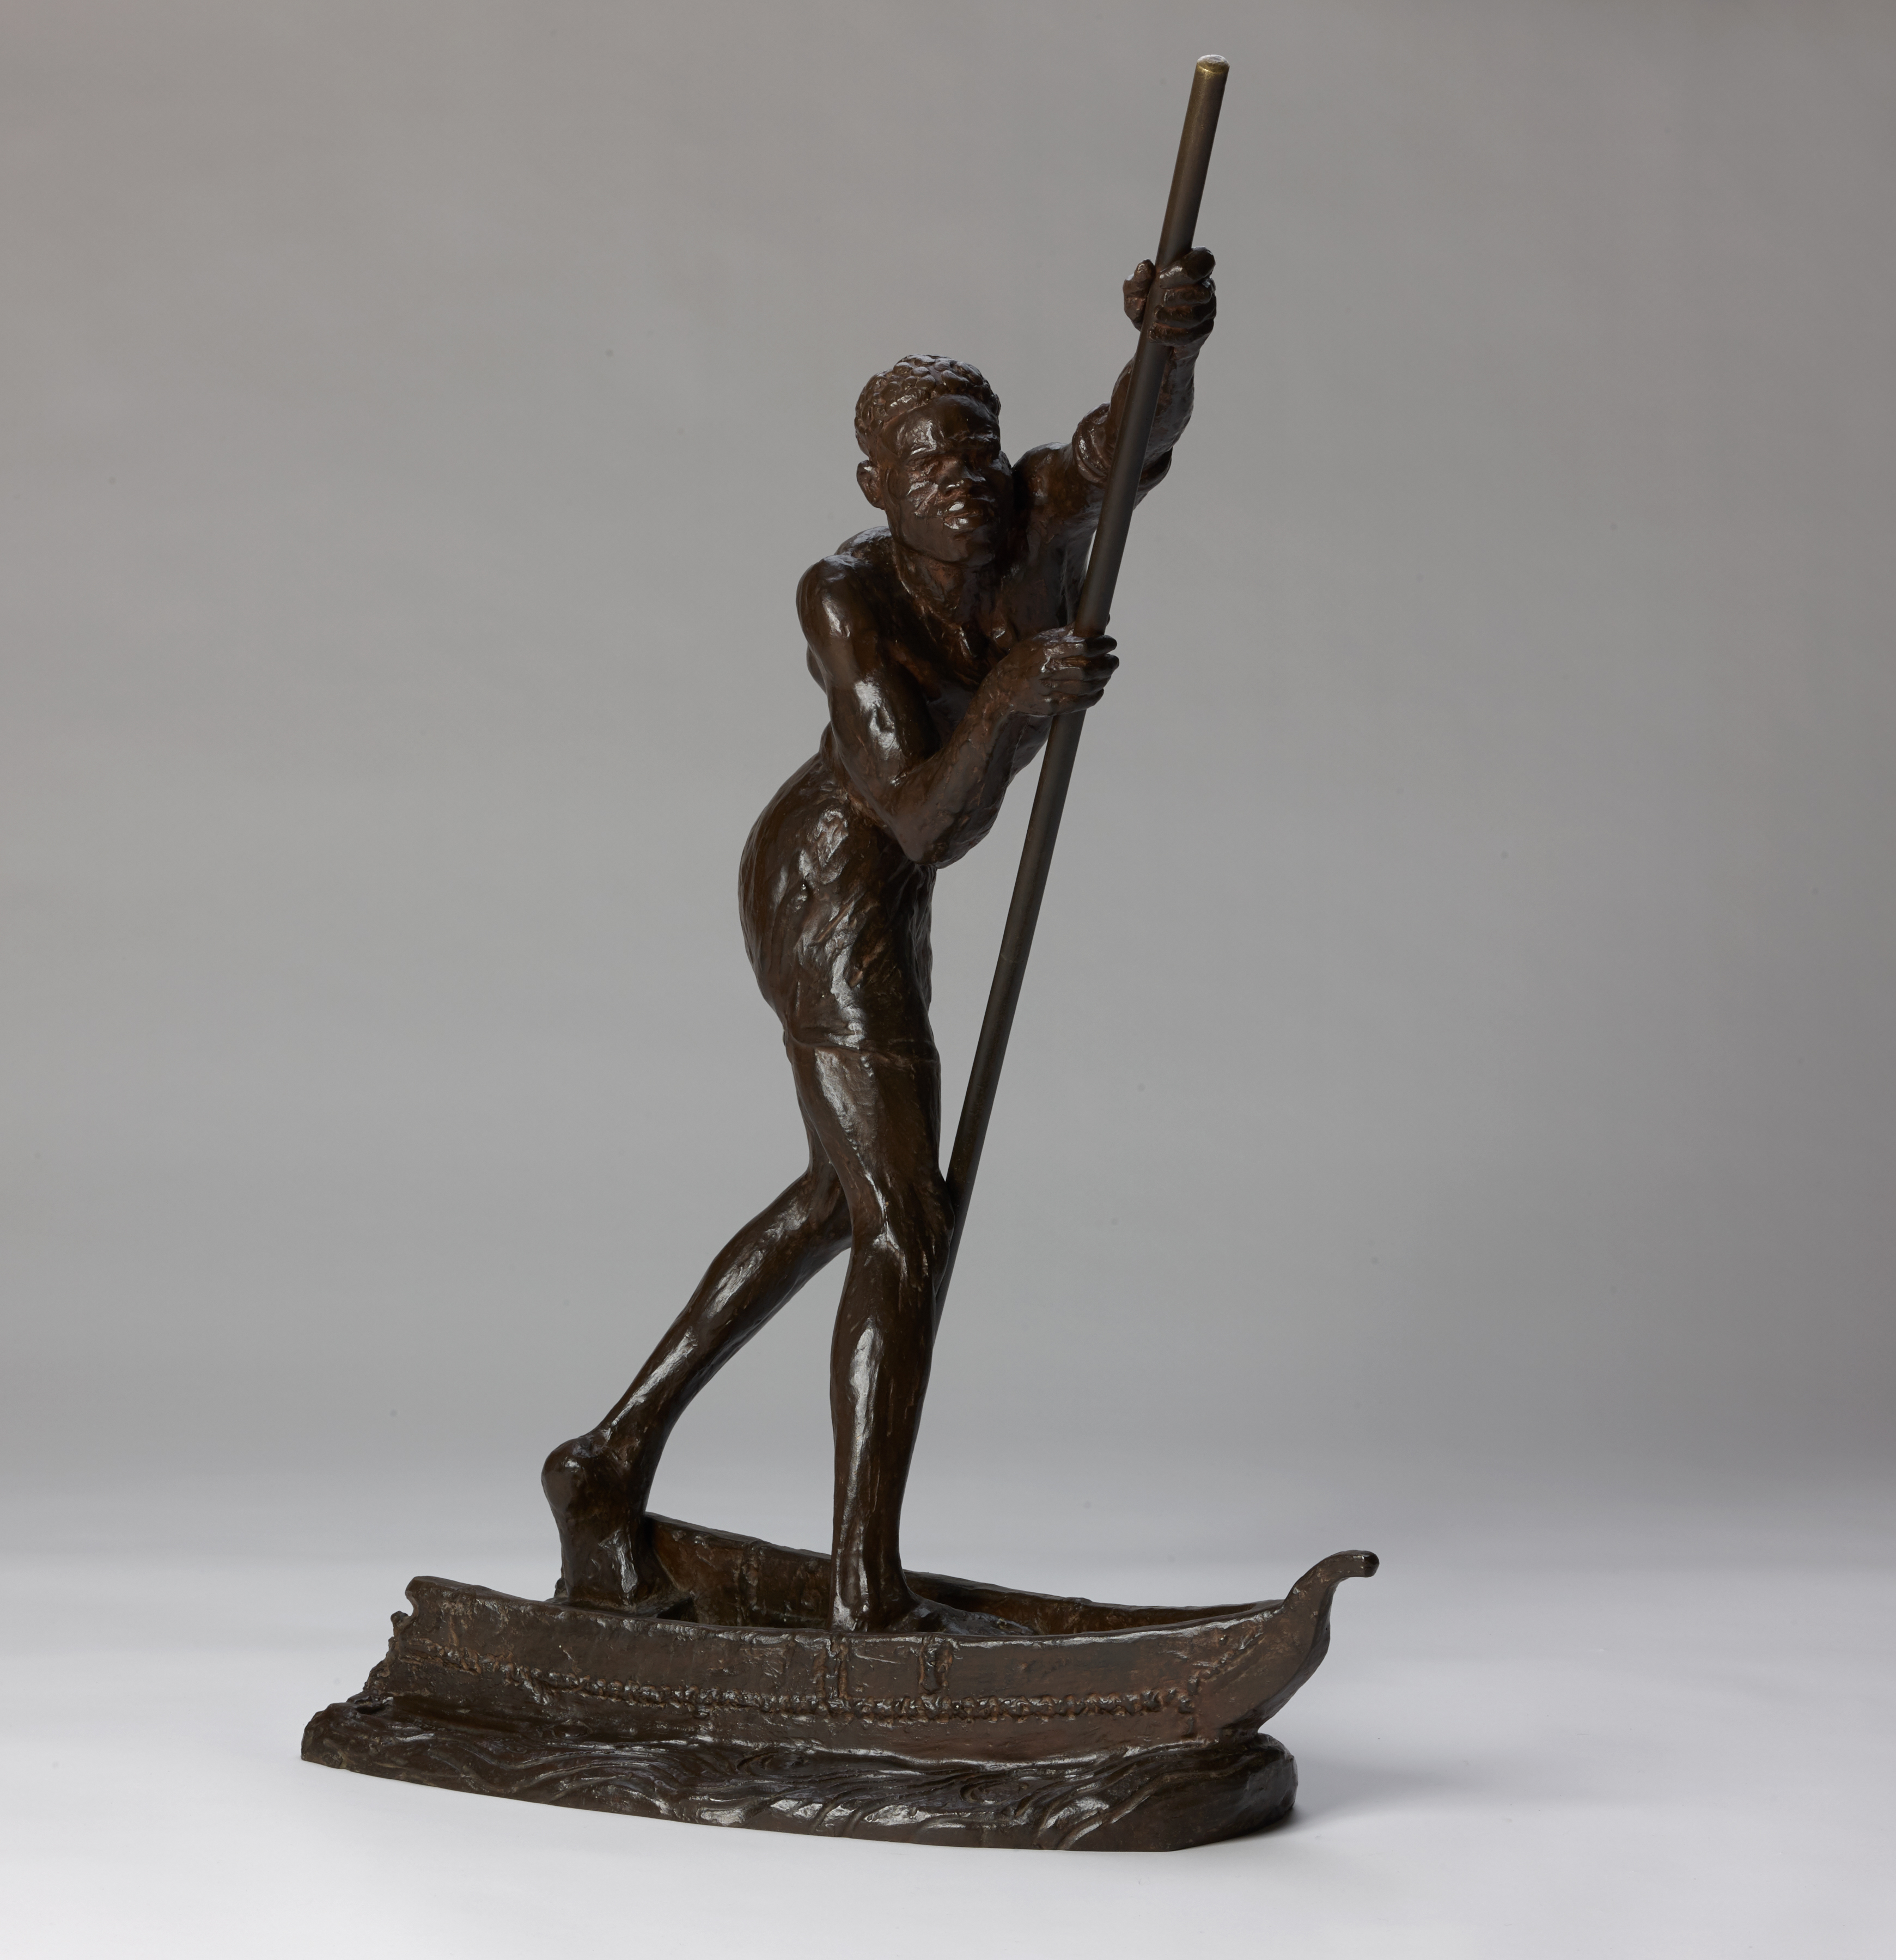 Anna QUINQUAUD, Laptot du Niger ou Le piroguier, 1925, Bronze patiné, fonte d’époque à la cire perdue, collection musée des Beaux-Arts de Brest